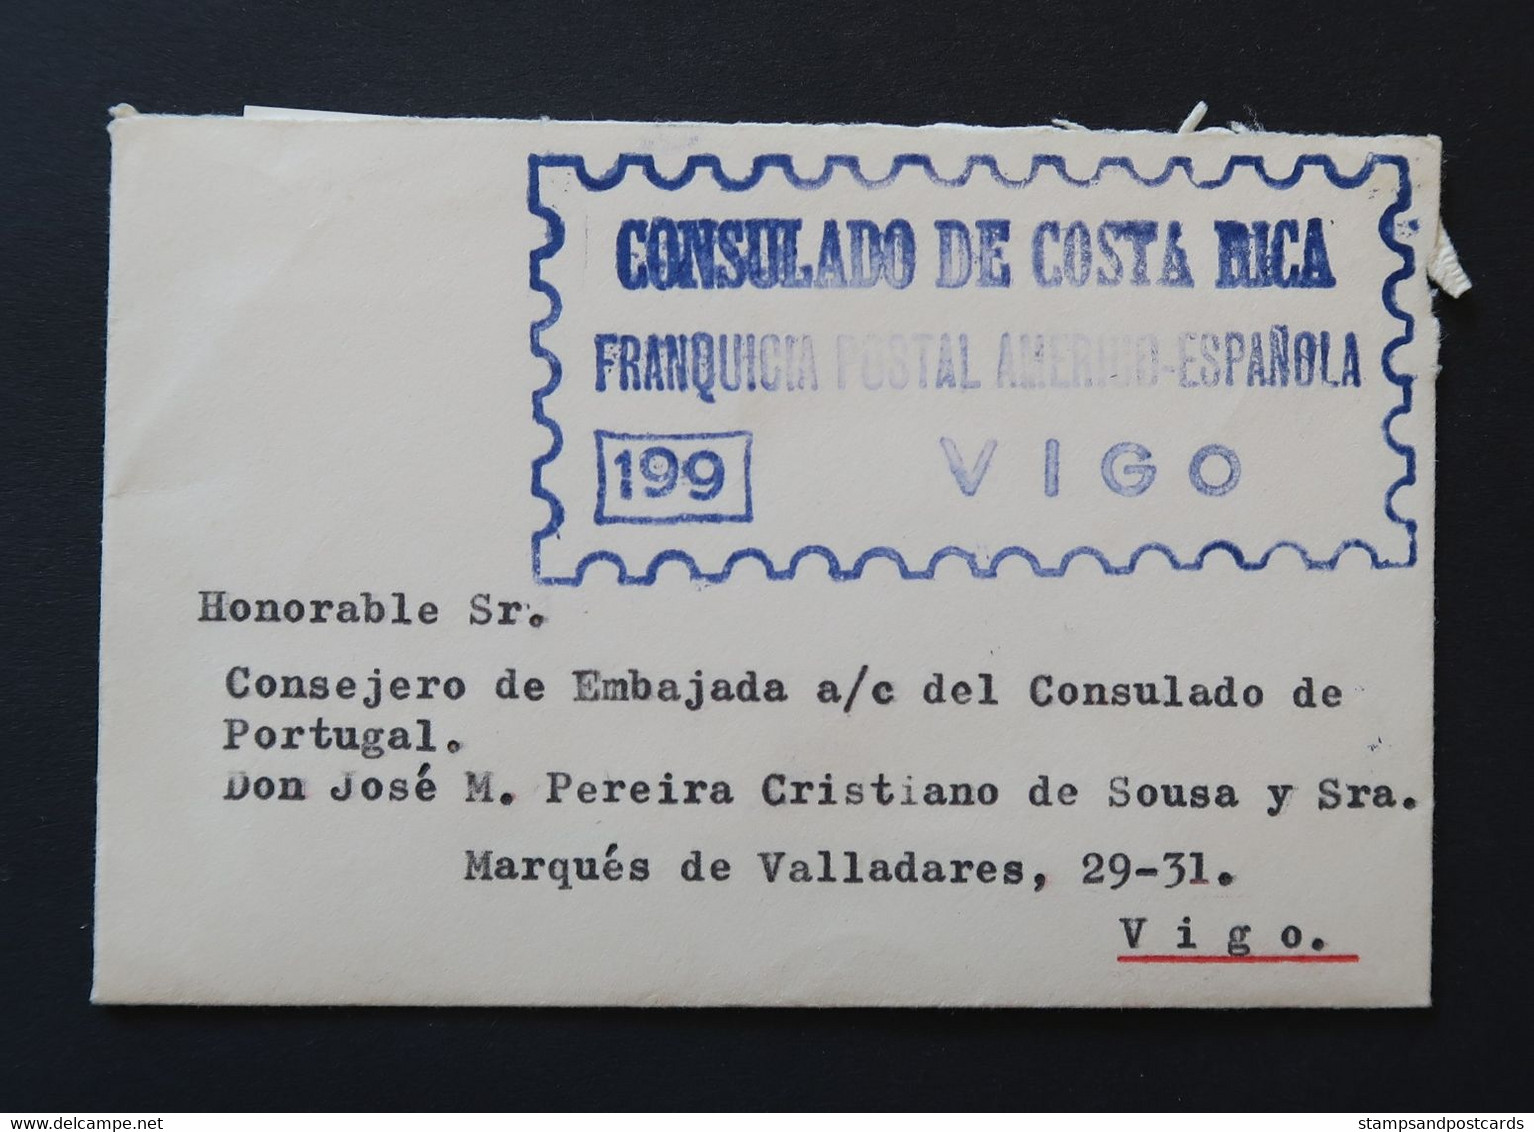 Espagne 1968 Lettre Franchise Postal Vigo Consulat Costa Rica España Franquicia Consulado Costa Rica Official Paid Spain - Portofreiheit